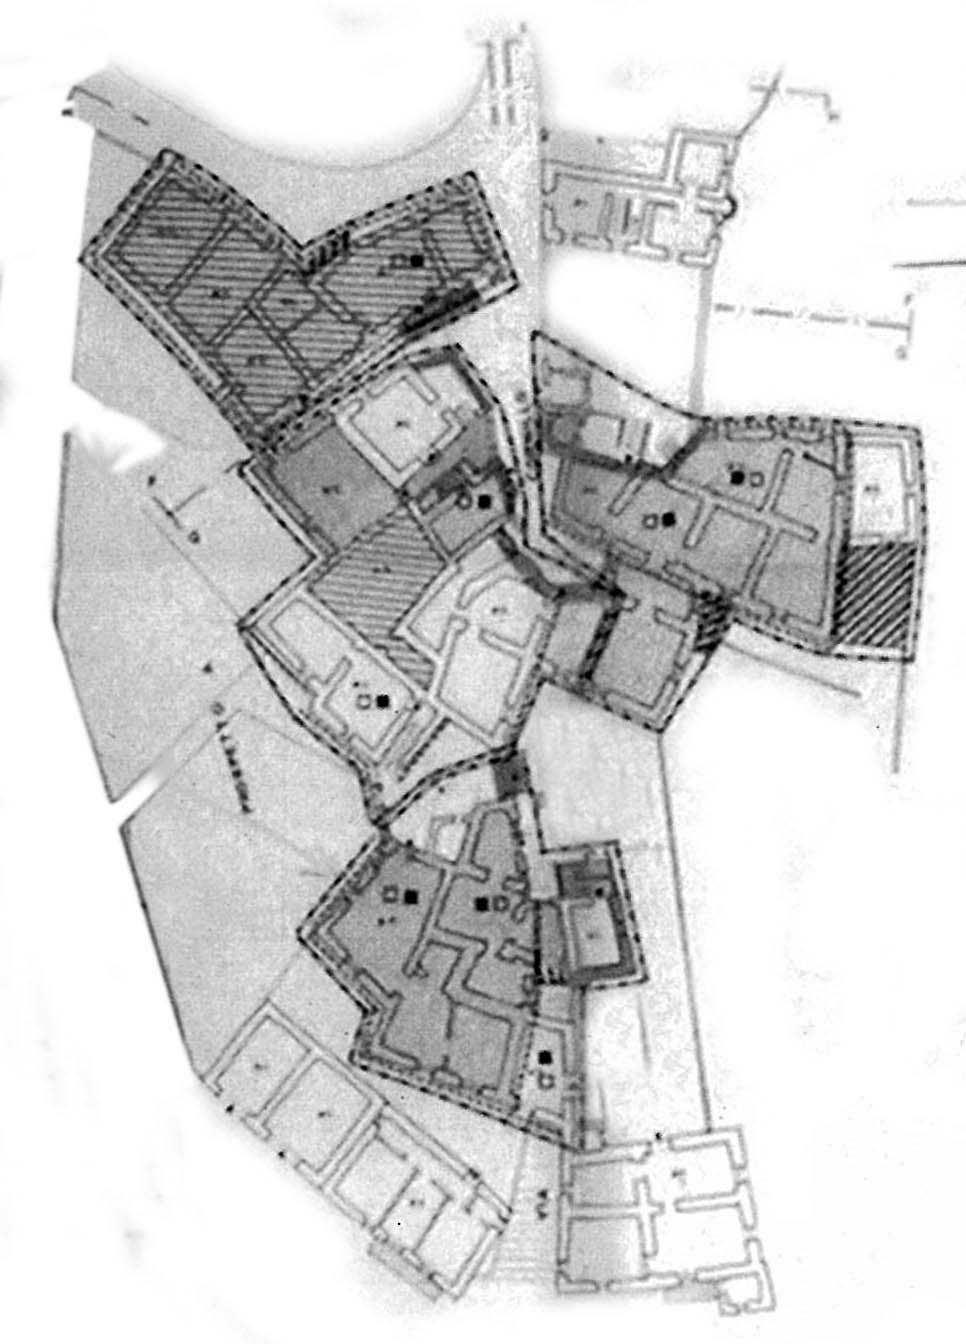 9 - Piano di Recupero del patrimonio edilizio esistente del Comune di Vallo di Nera (PG); con L. Triggiani e S. Terenzi - Planimetria